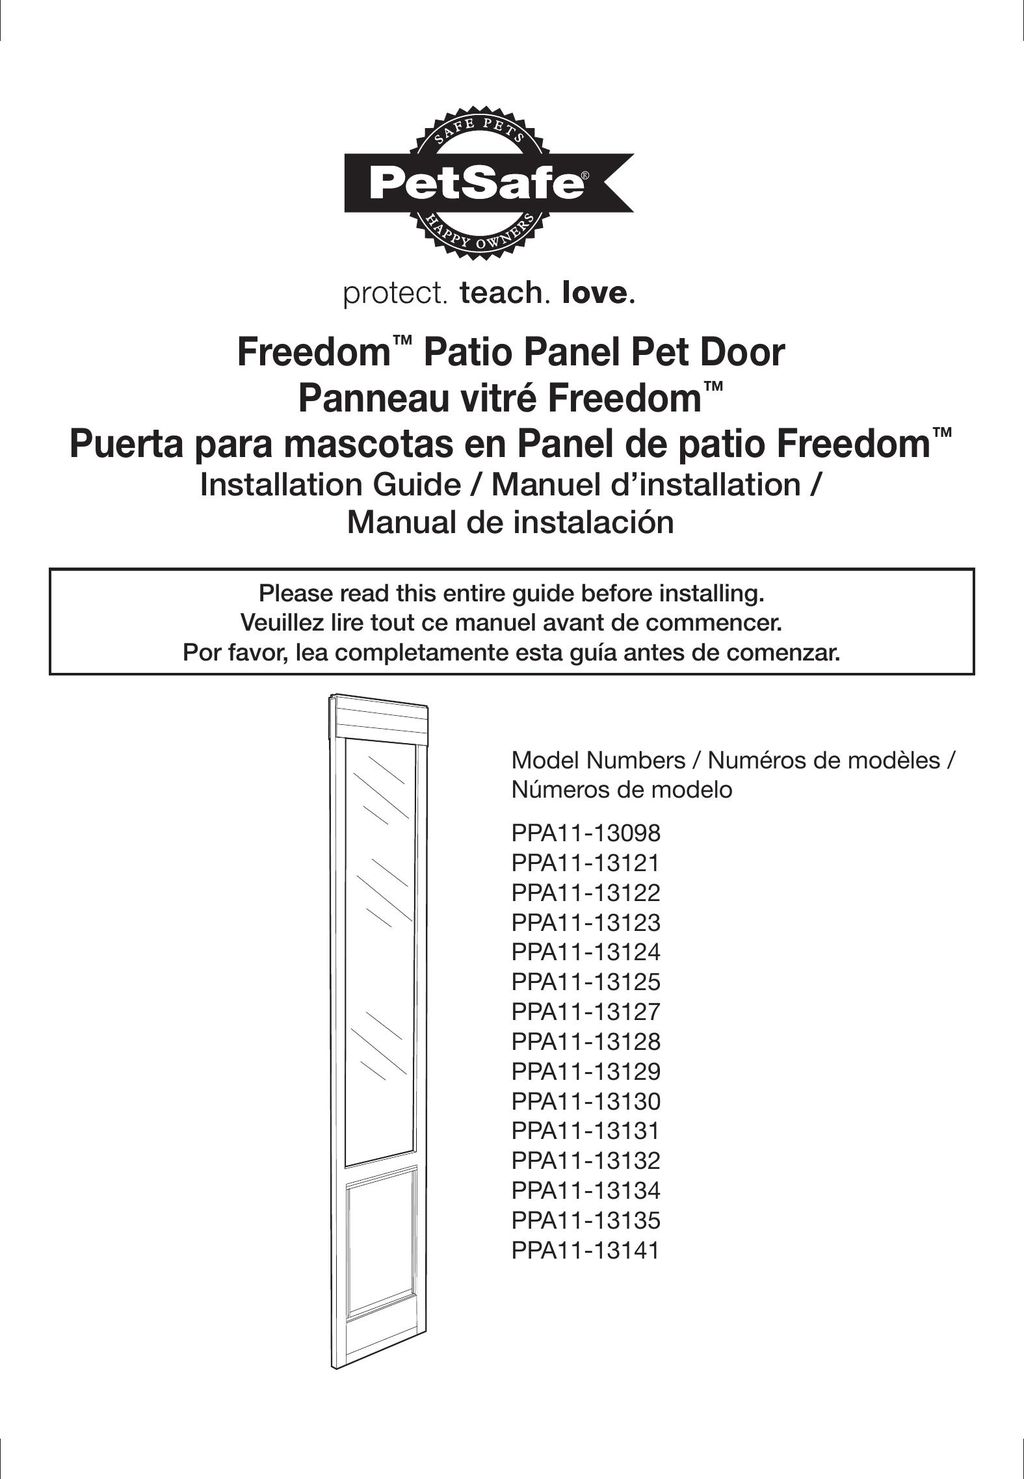 Petsafe PPA11-13125 Door User Manual